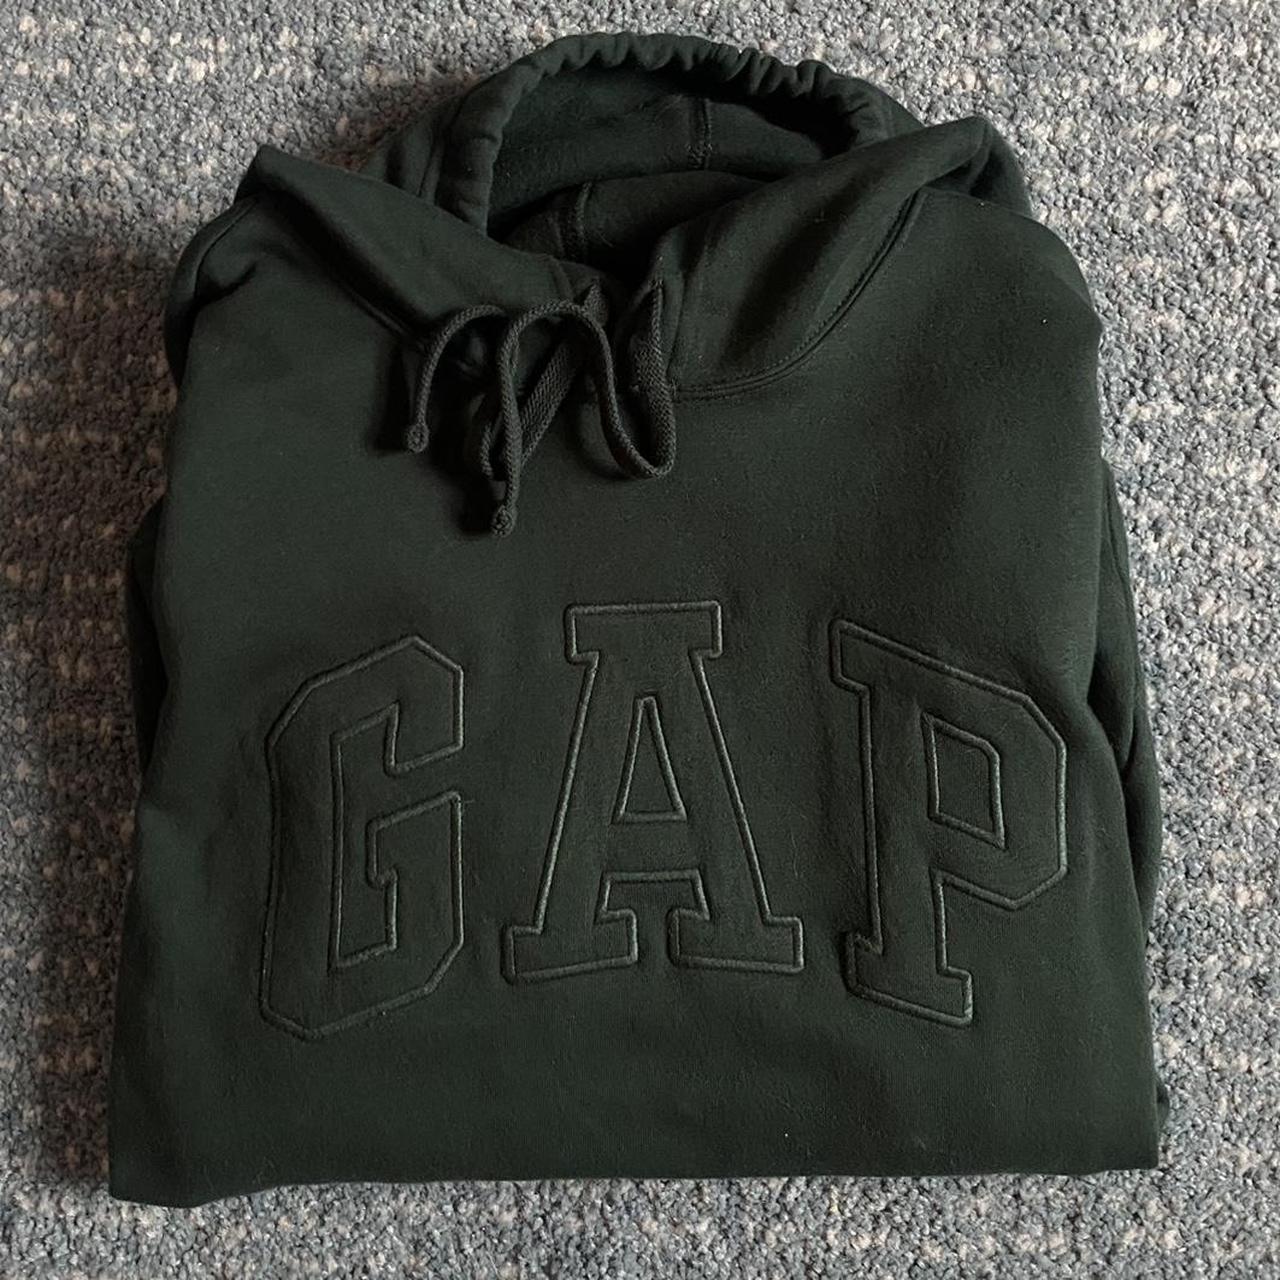 Gap Forest Green Hoodie worn once - Depop